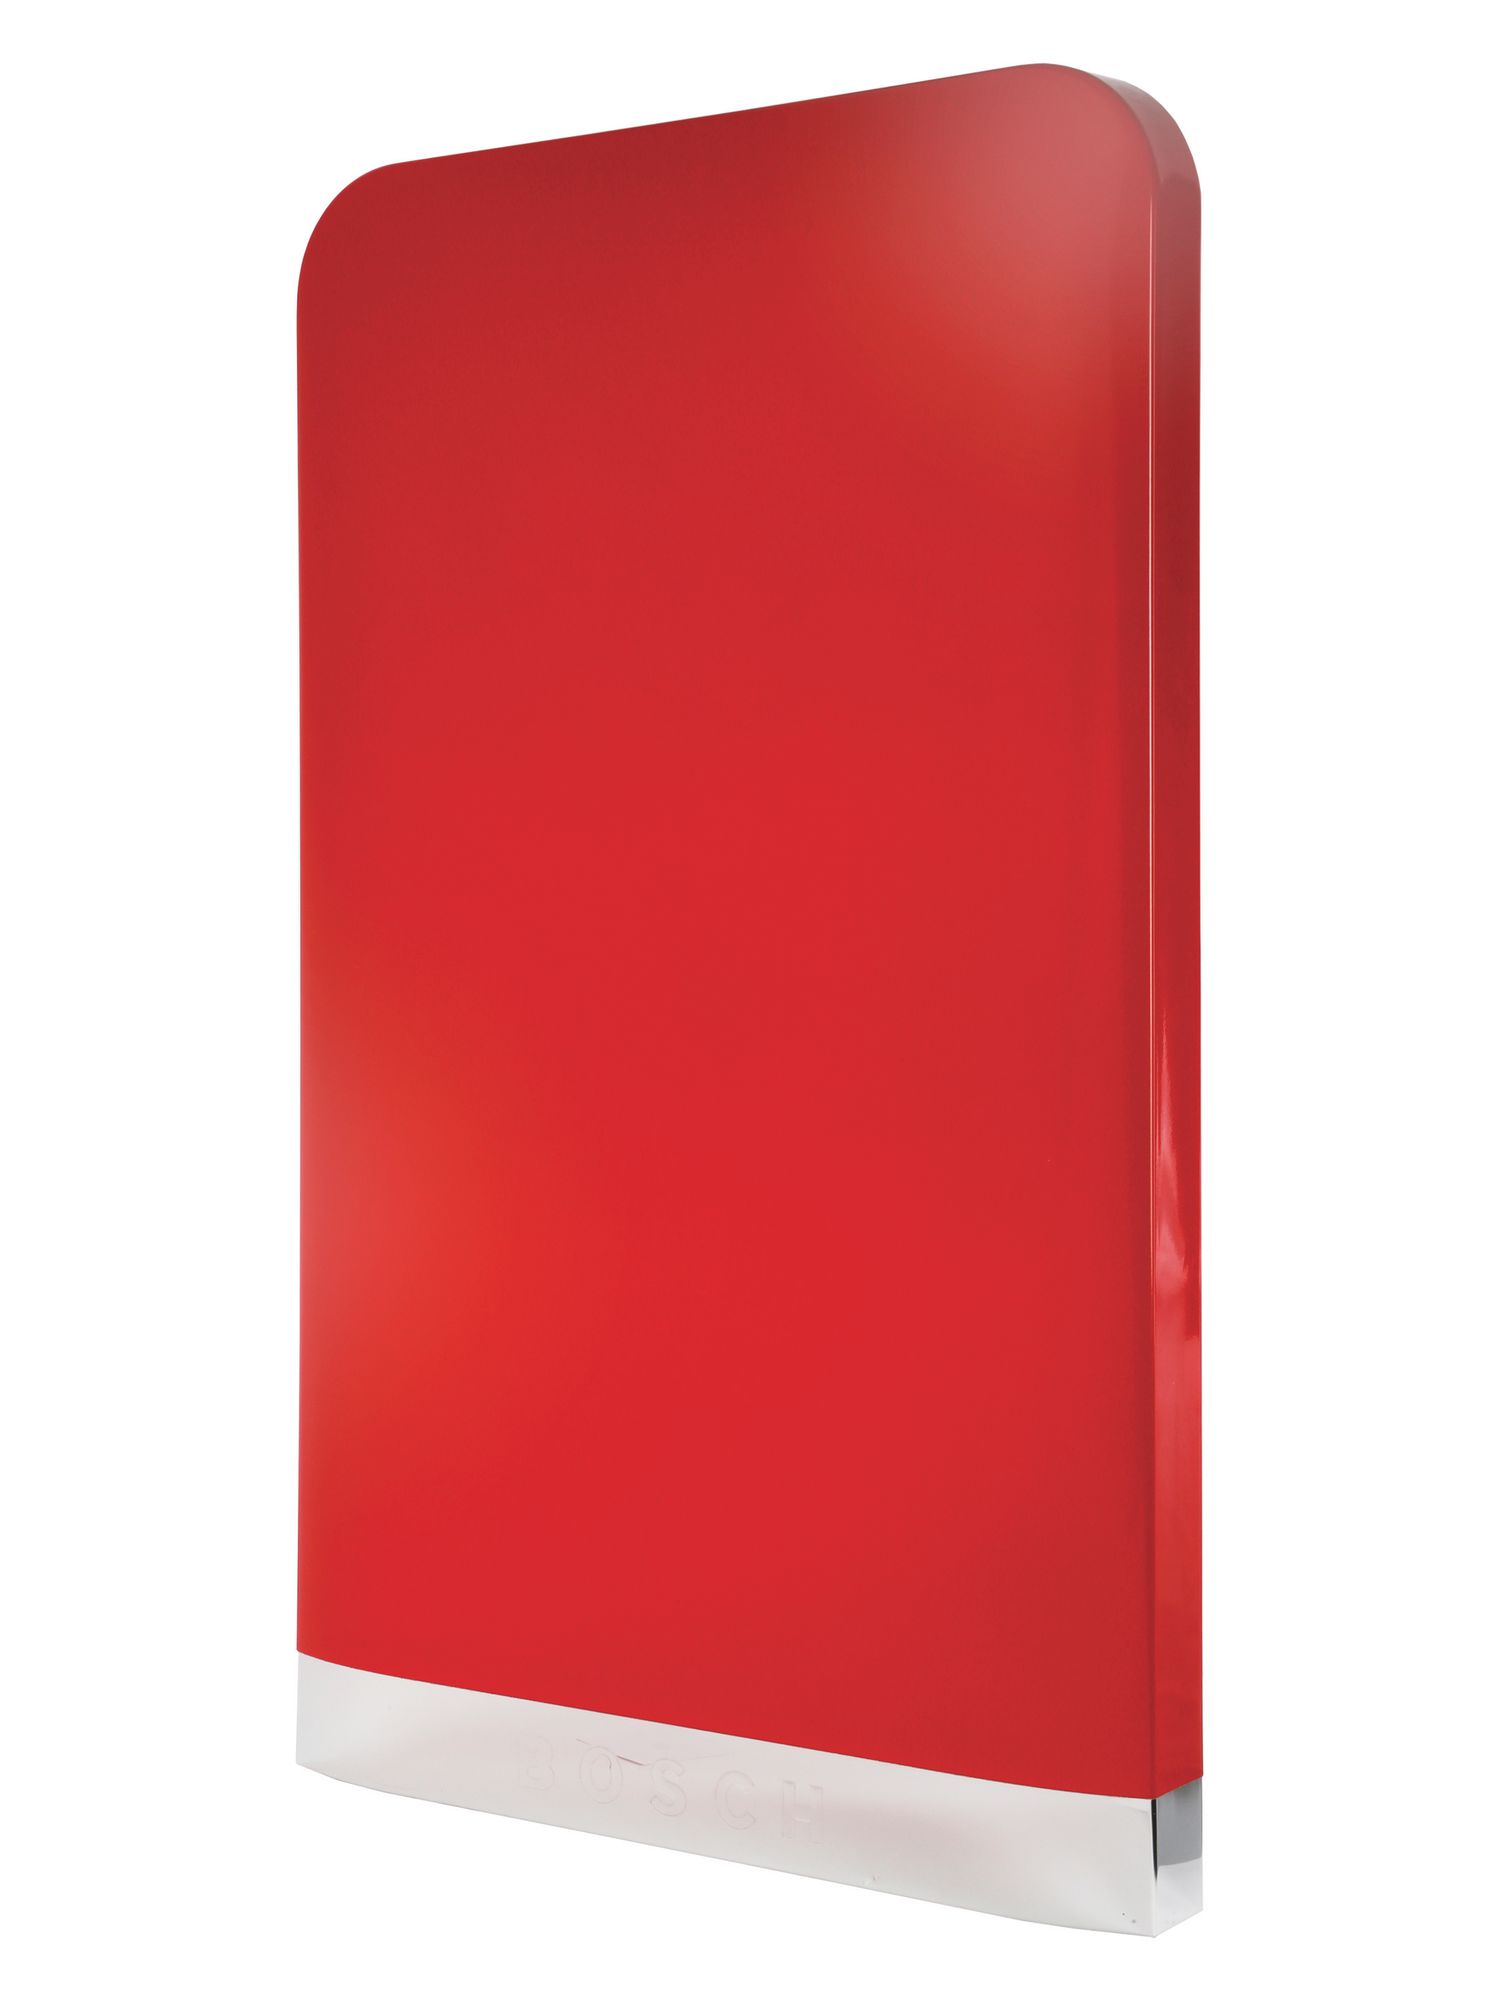 Dekorblech Überdachte Kühlschranktür komplett rot glänzend (BD-00714960)